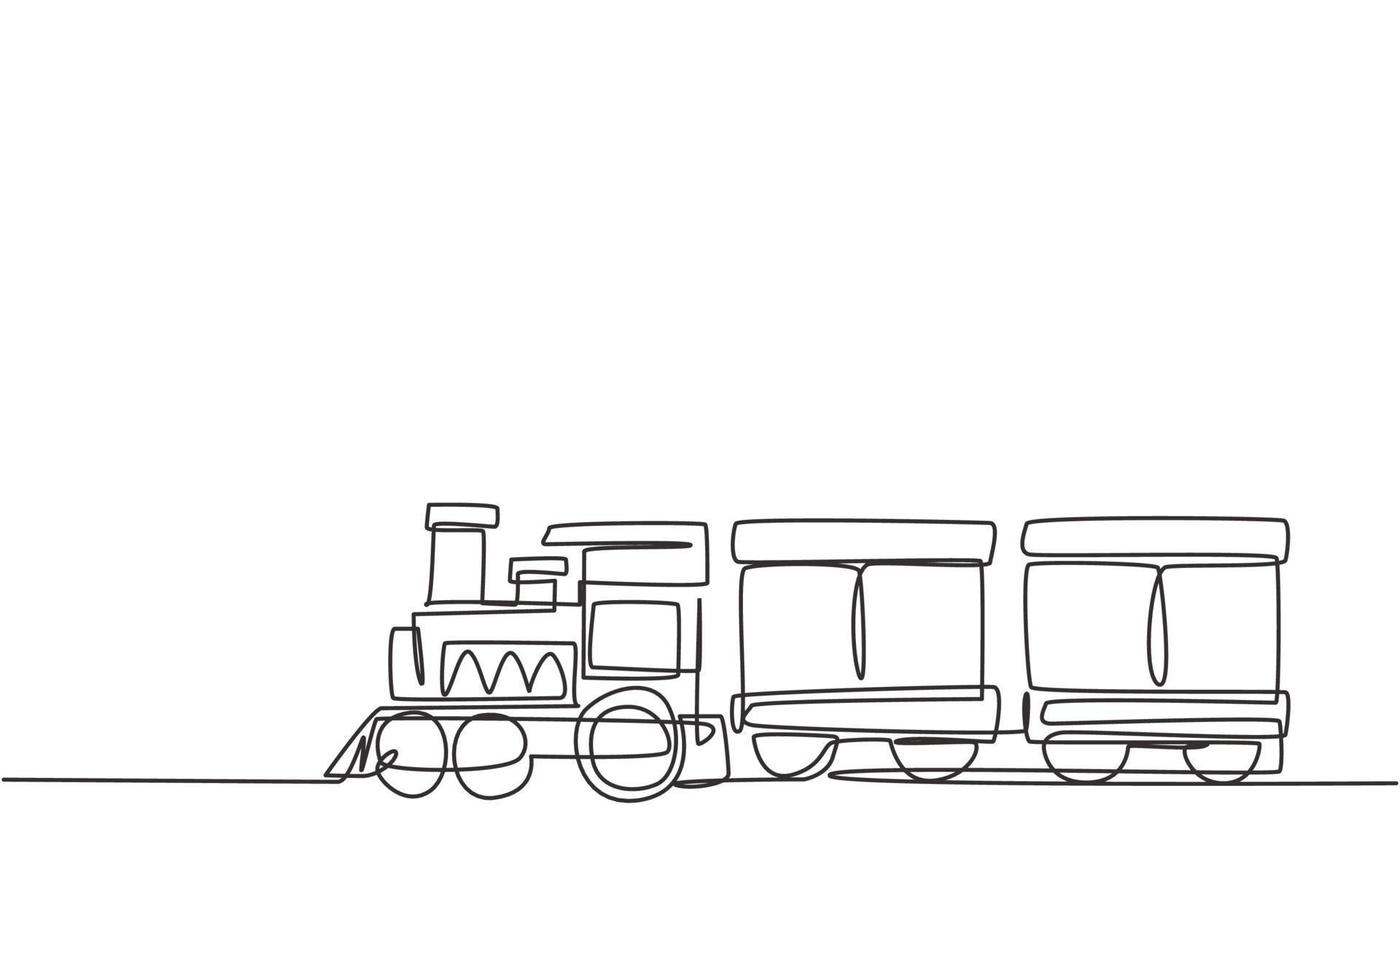 enda enradsteckning av ett tåglokomotiv med två vagnar i form av ett ångande system i nöjespark för att transportera passagerare. kontinuerlig linje rita design grafisk vektor illustration